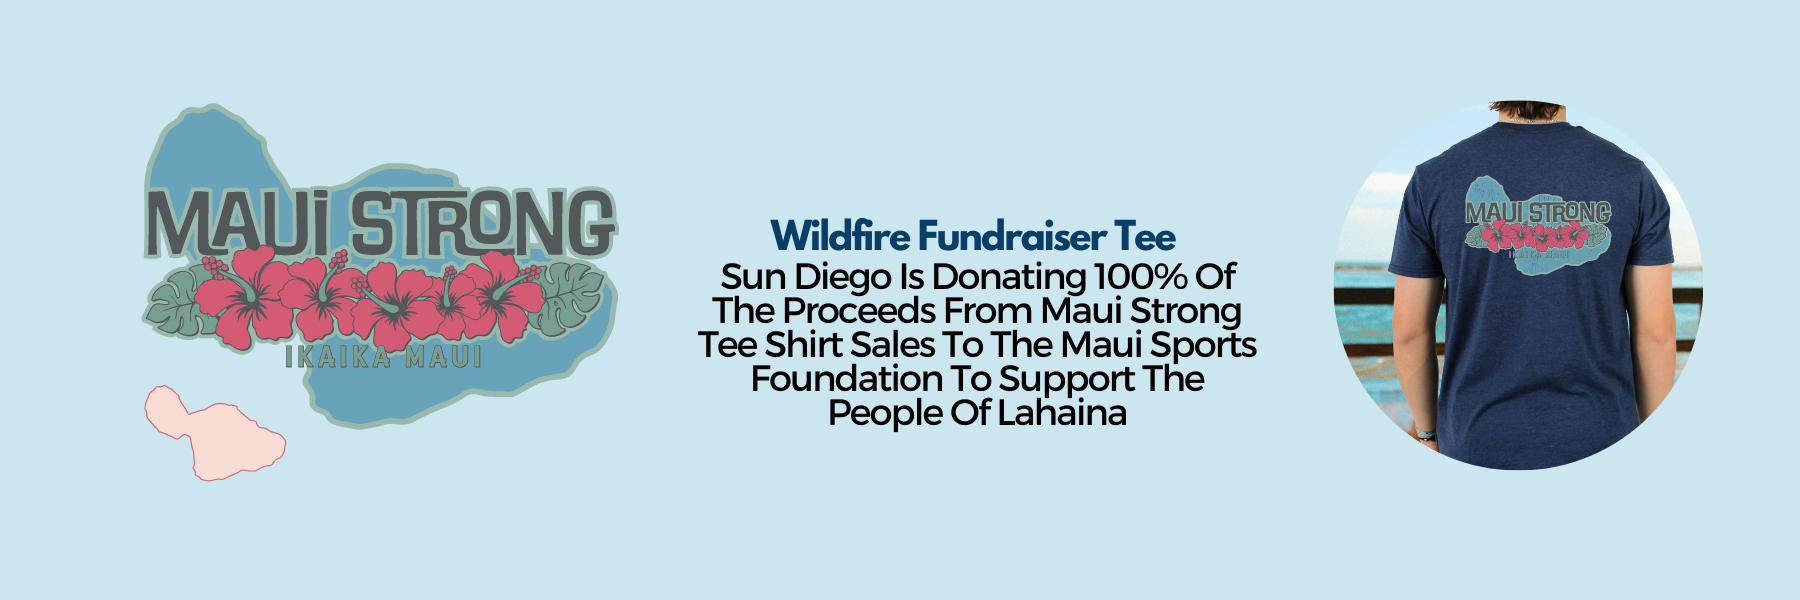 Shop Sun Diego Maui Strong Fundraiser Tee